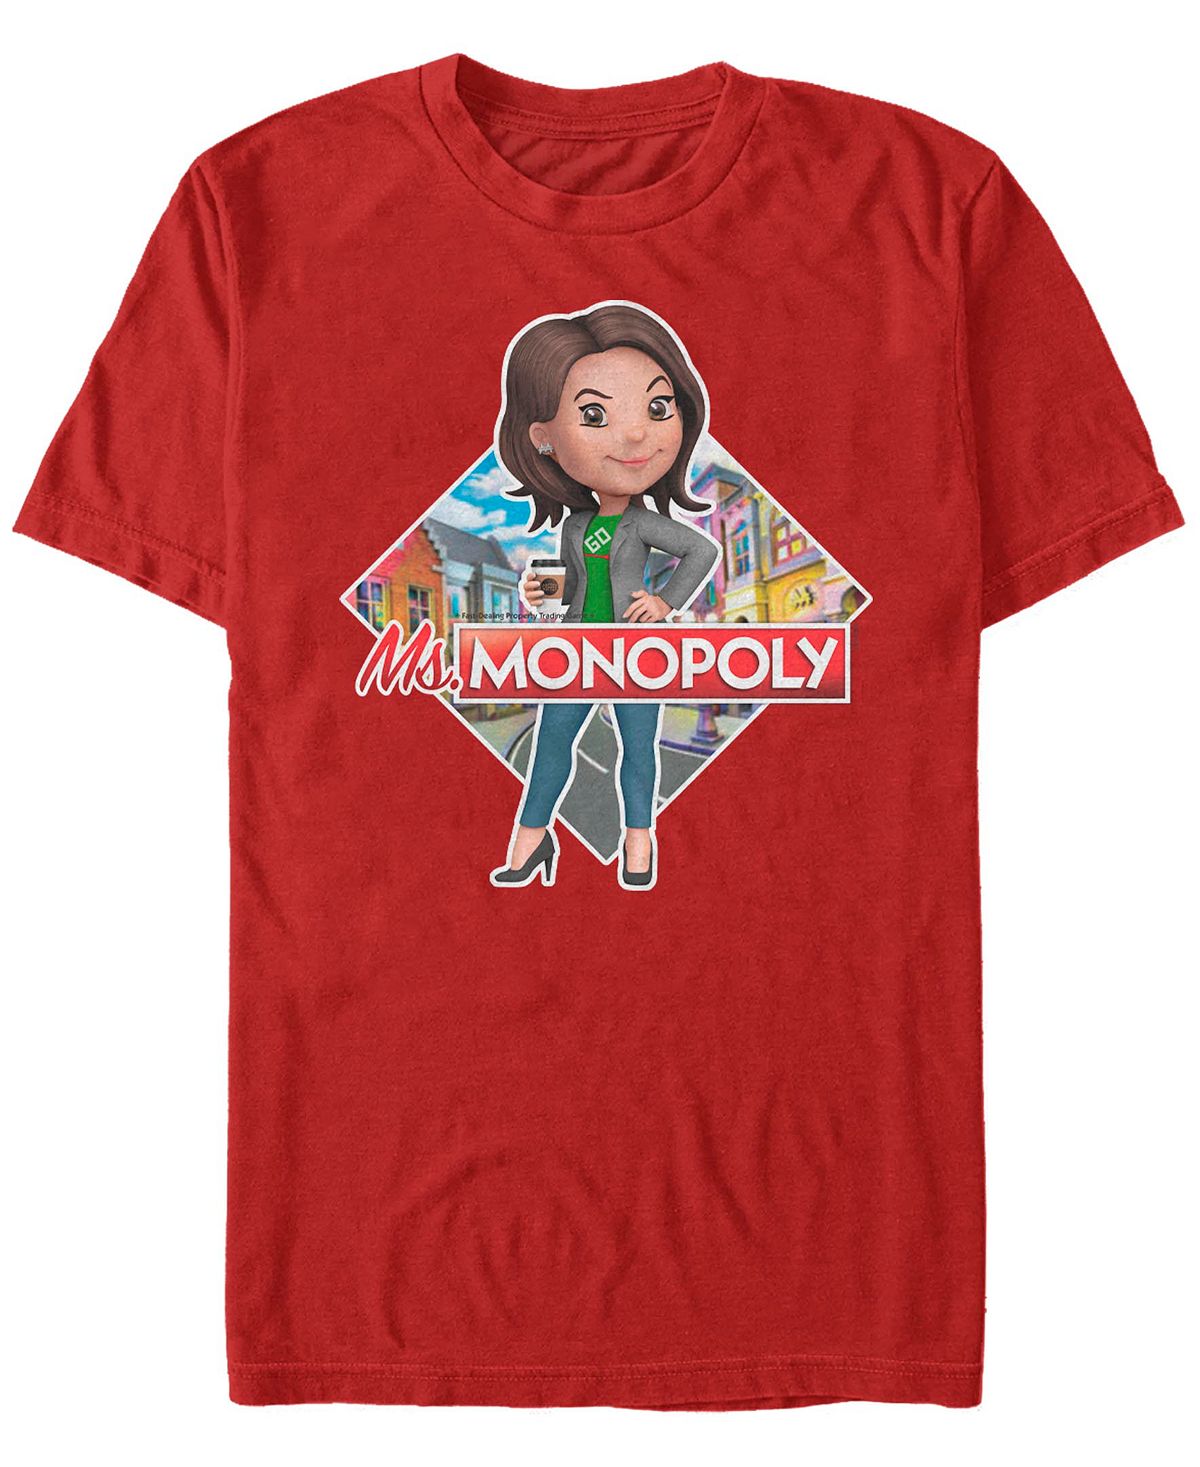 Мужская футболка с коротким рукавом с логотипом monopoly ms monopoly Fifth Sun, красный мужская футболка с коротким рукавом monopoly hustle hard fifth sun синий